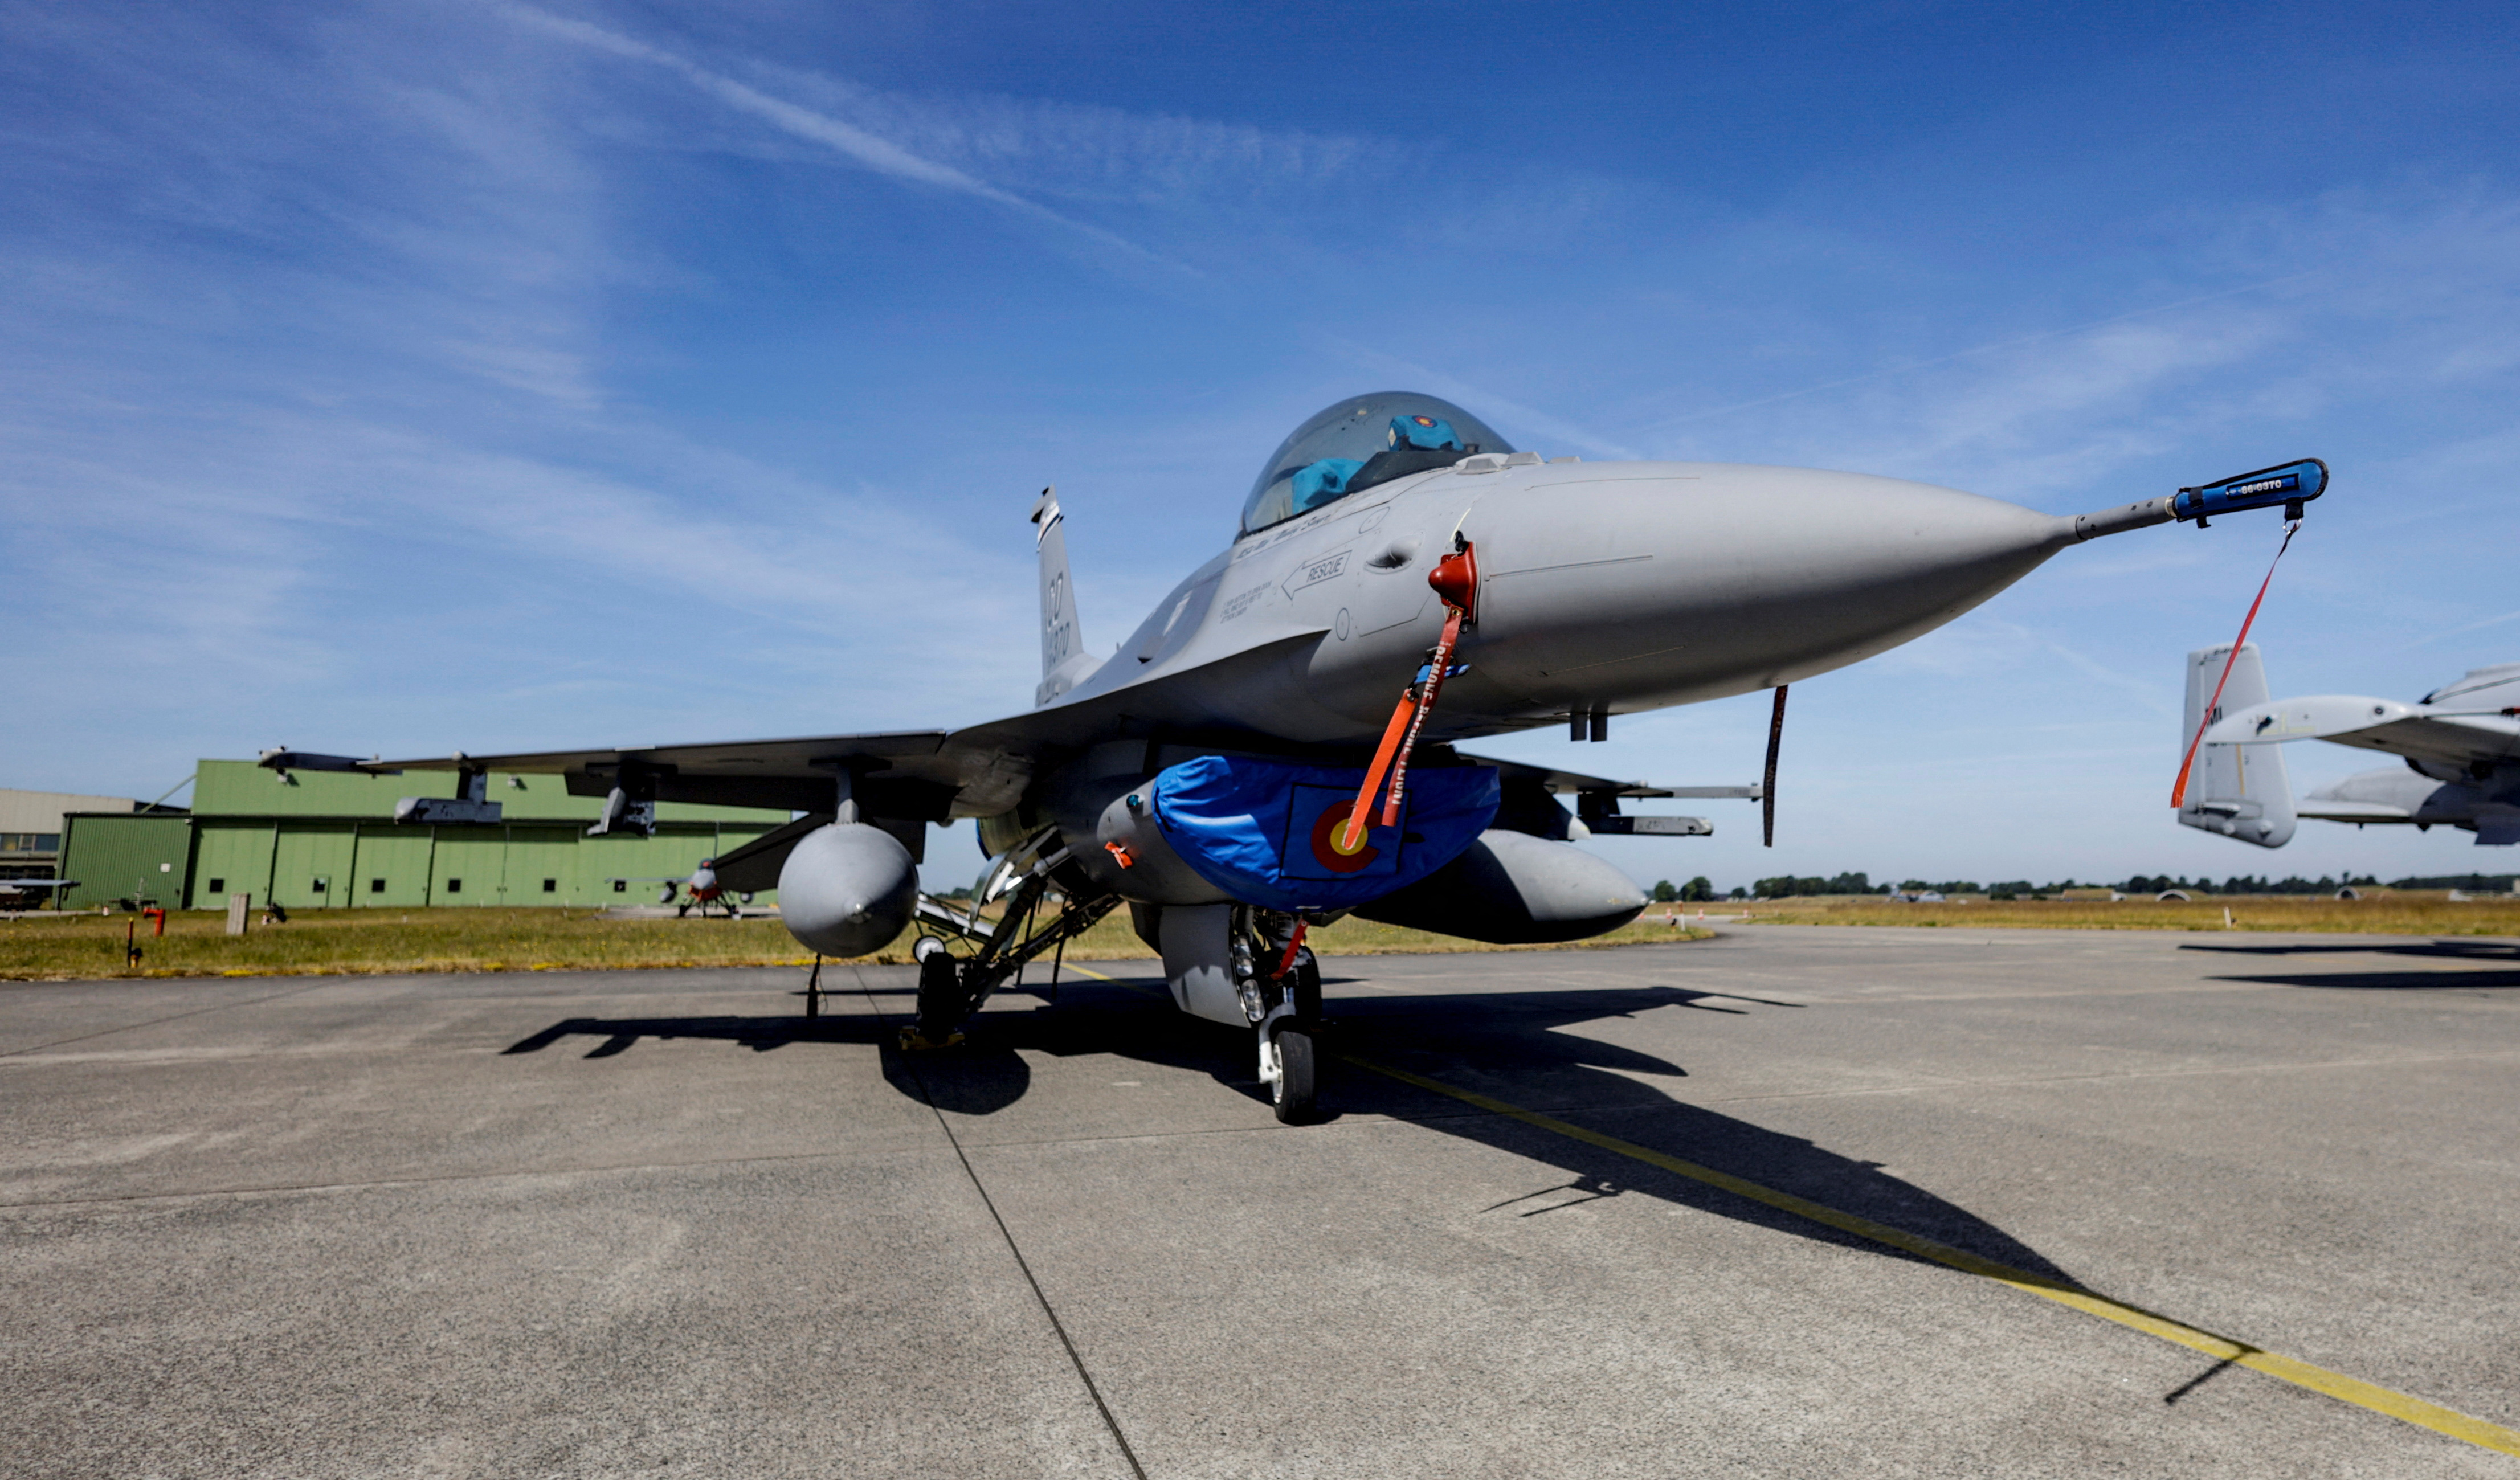 ABD’nin F-16 satışı sözü vermesi halinde Türkiye İsveç’in NATO hedefini destekleyecek – Erdoğan